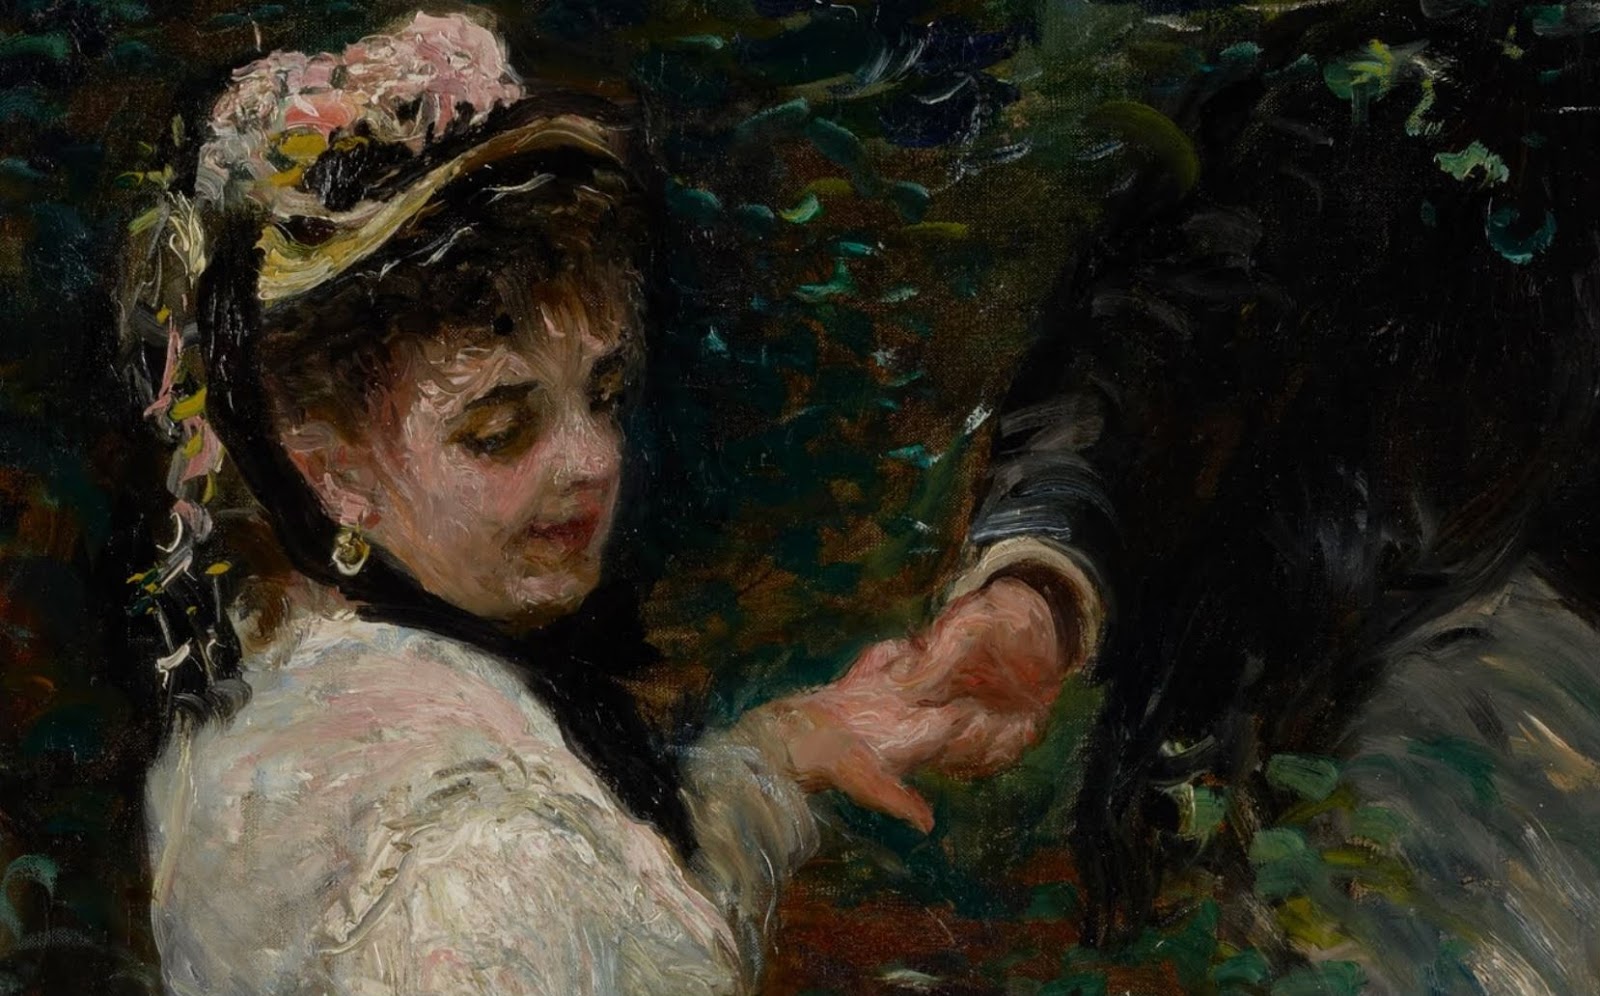 Pierre+Auguste+Renoir-1841-1-19 (271).JPG